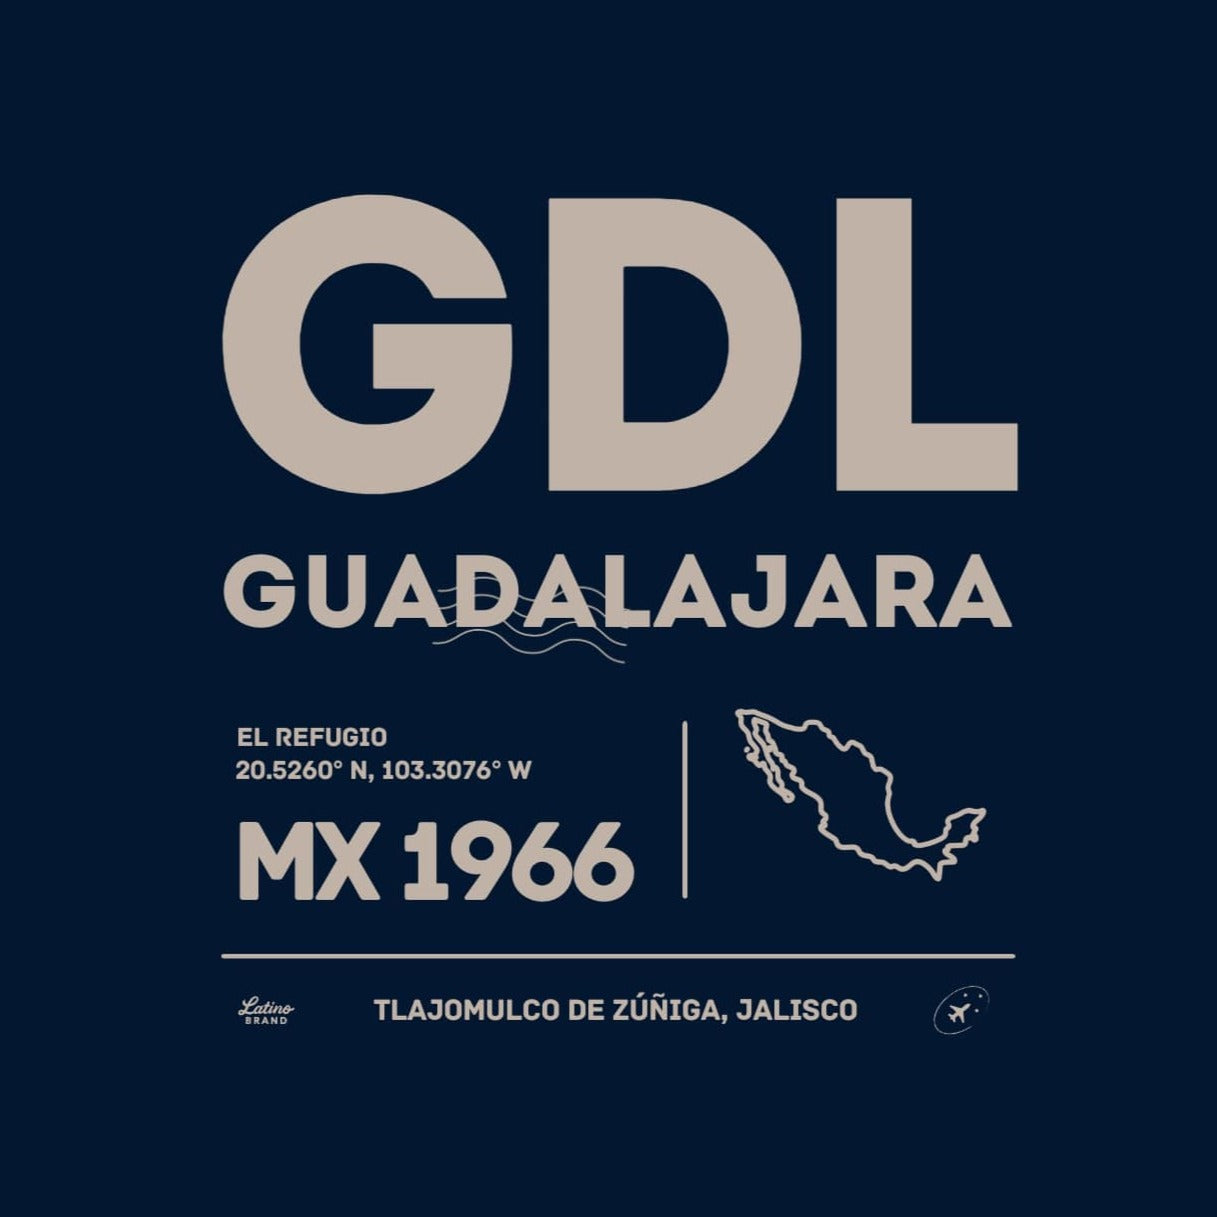 🇲🇽 GDL - Guadalajara T-shirt